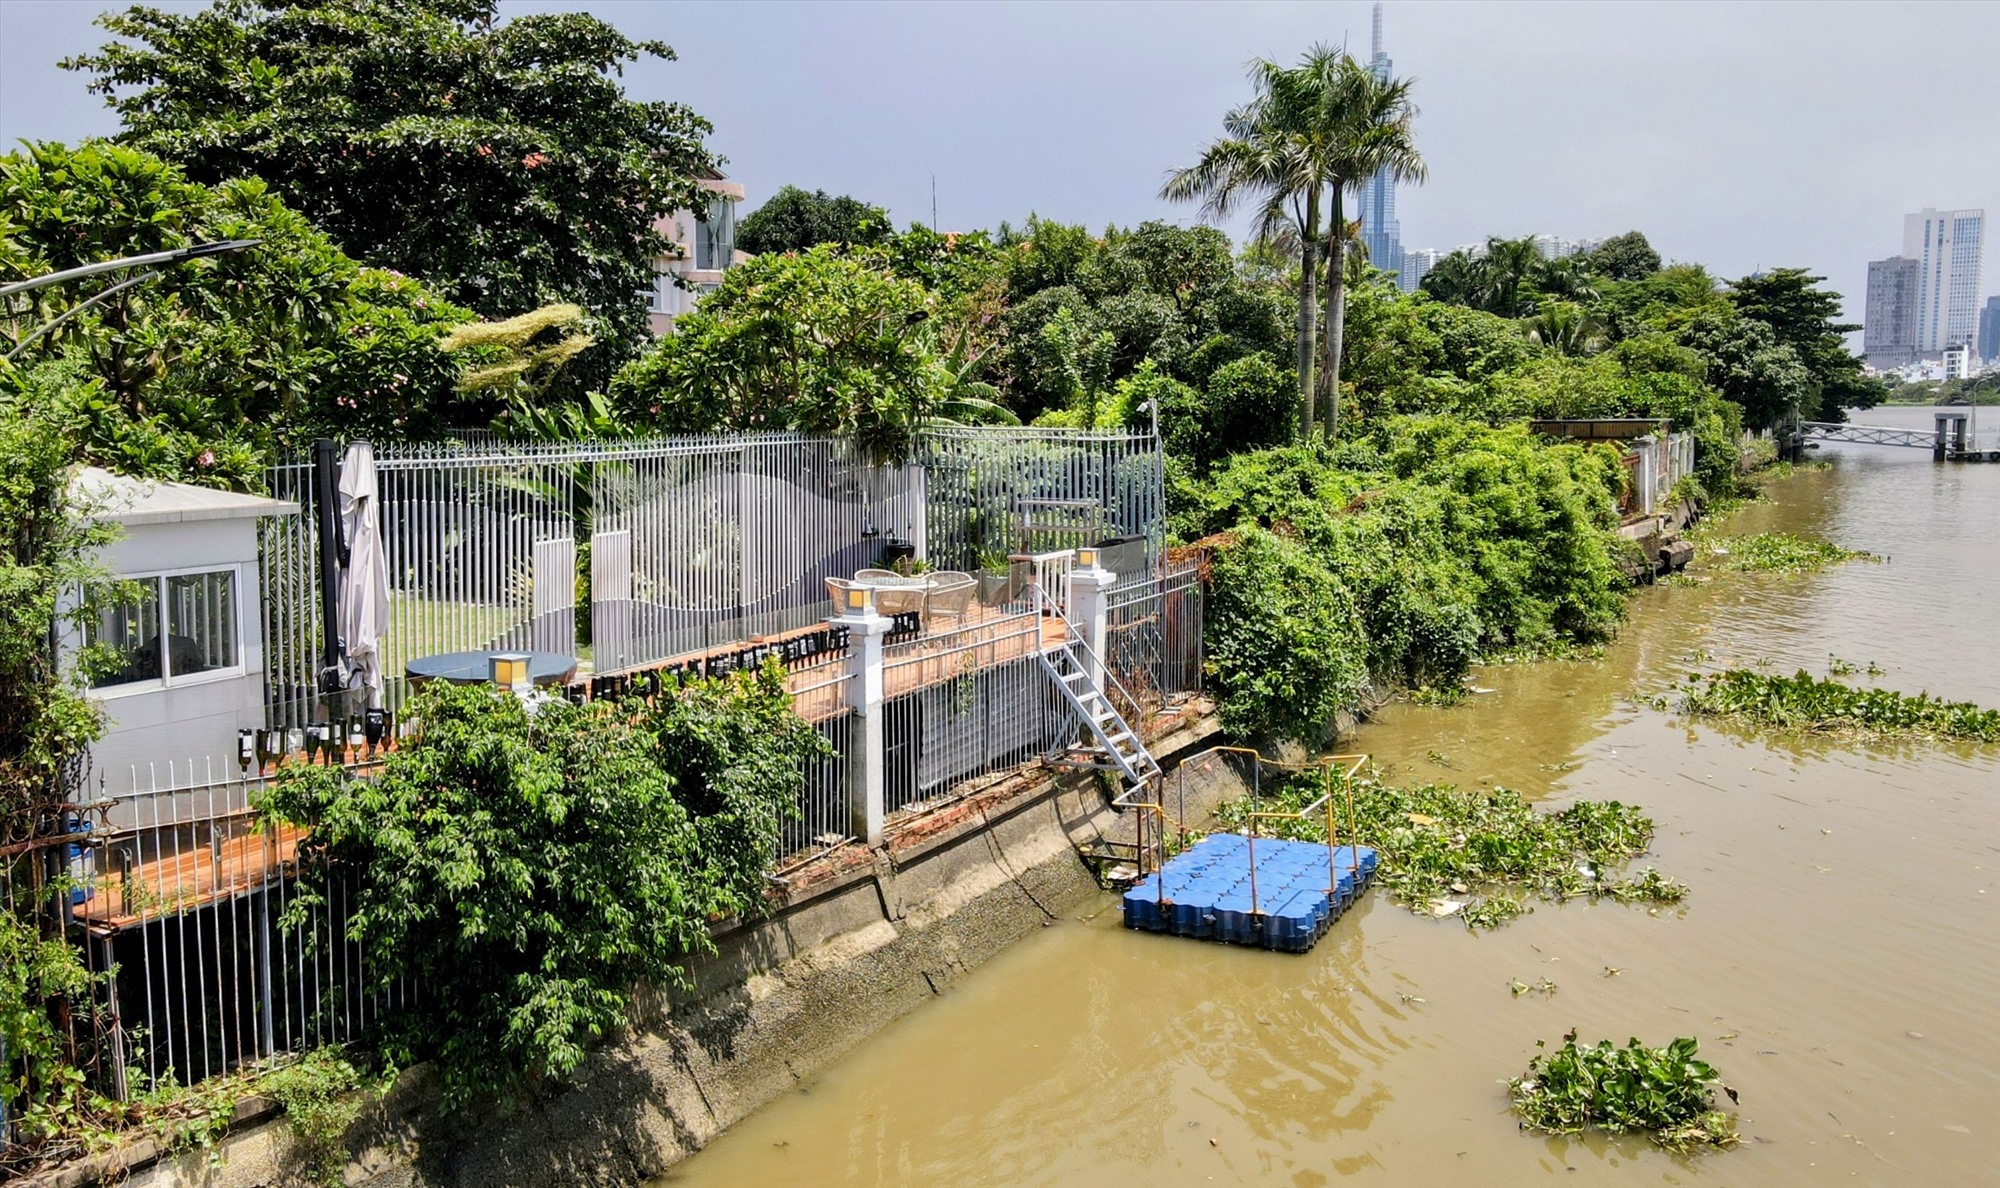  Đi dọc bờ sông Sài Gòn không khó để nhìn thấy hình ảnh hàng loạt công trình nằm lấn chiếm bờ sông.